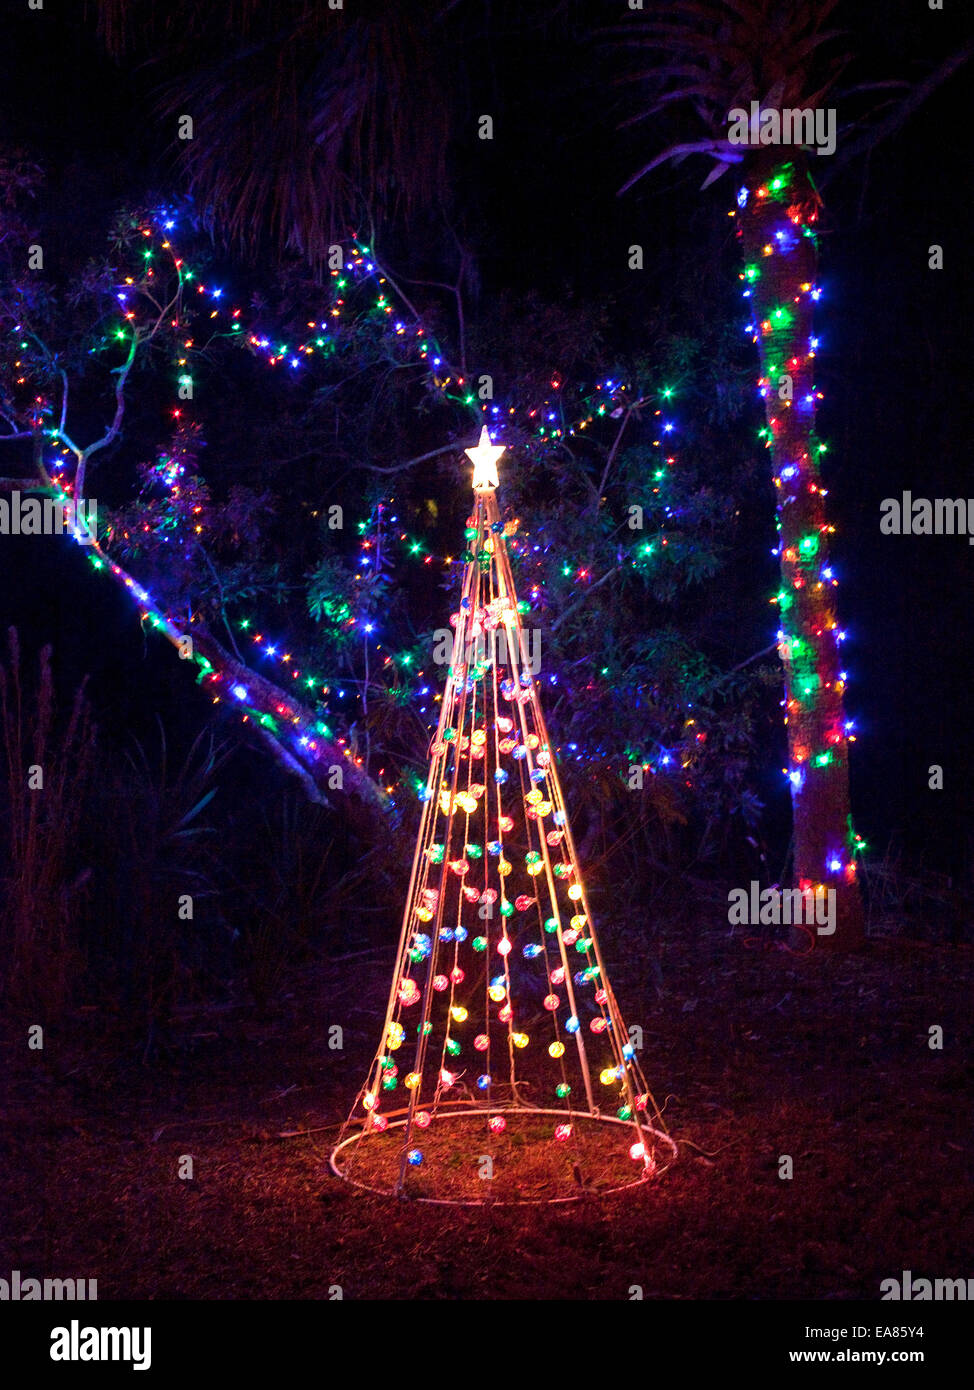 Iluminado Árbol de Navidad artificiales y luces en la noche. Foto de stock